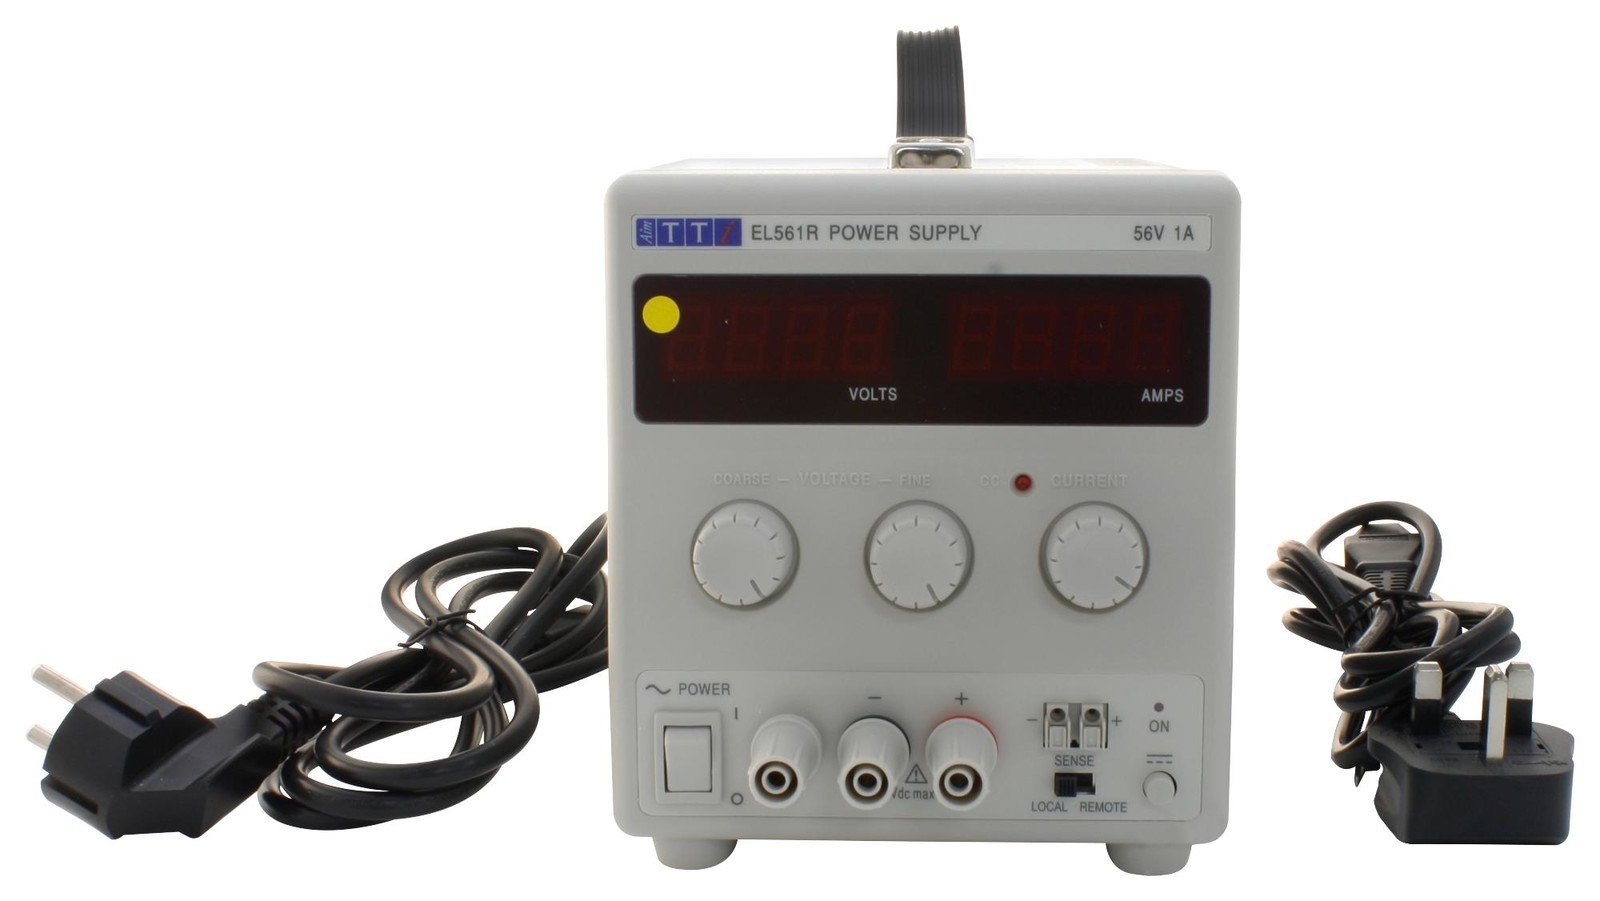 Aim-Tti Instruments El303R Power Supply, 1Ch, 30V, 3A, Adjustable